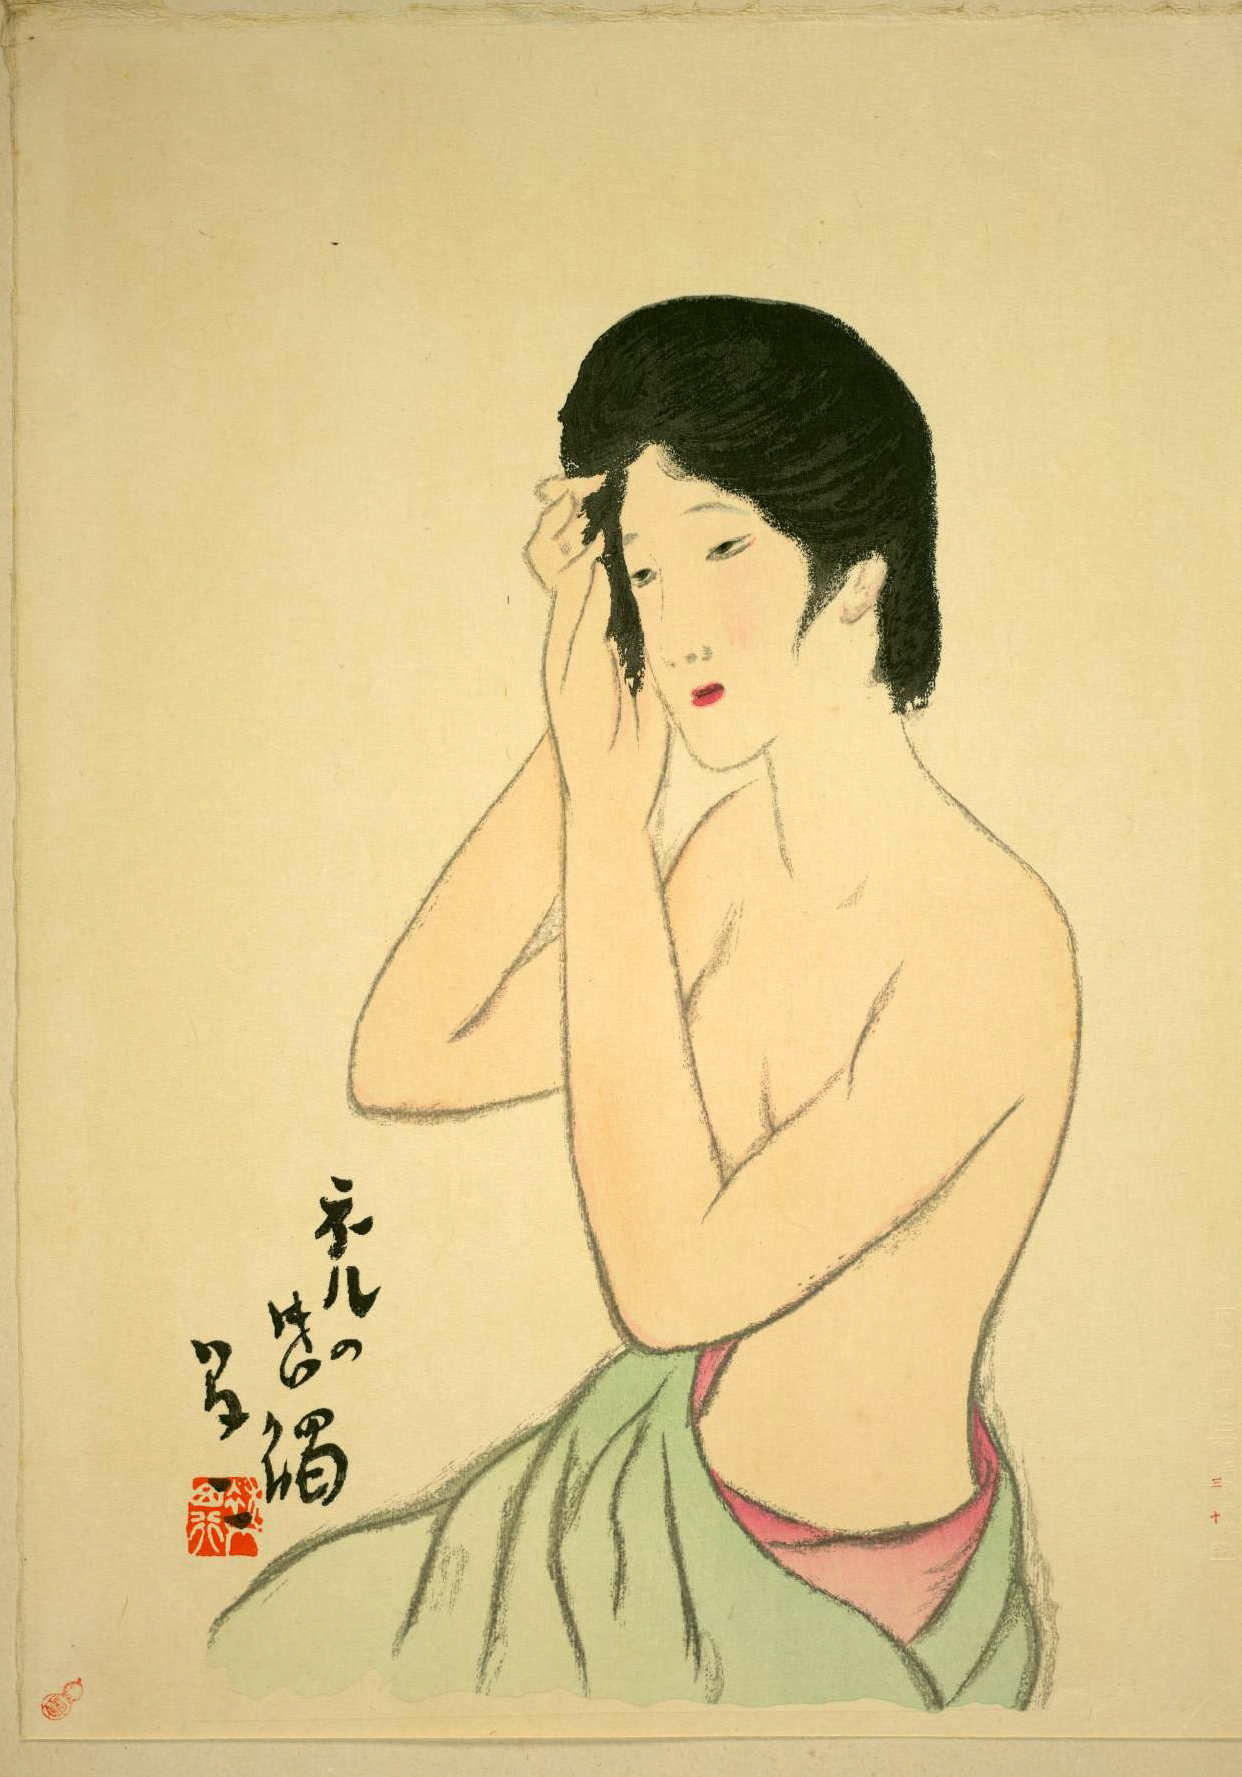 竹久夢二版画「女十題 ネルの感触」 木版画 限180 高見澤版 - 美術品